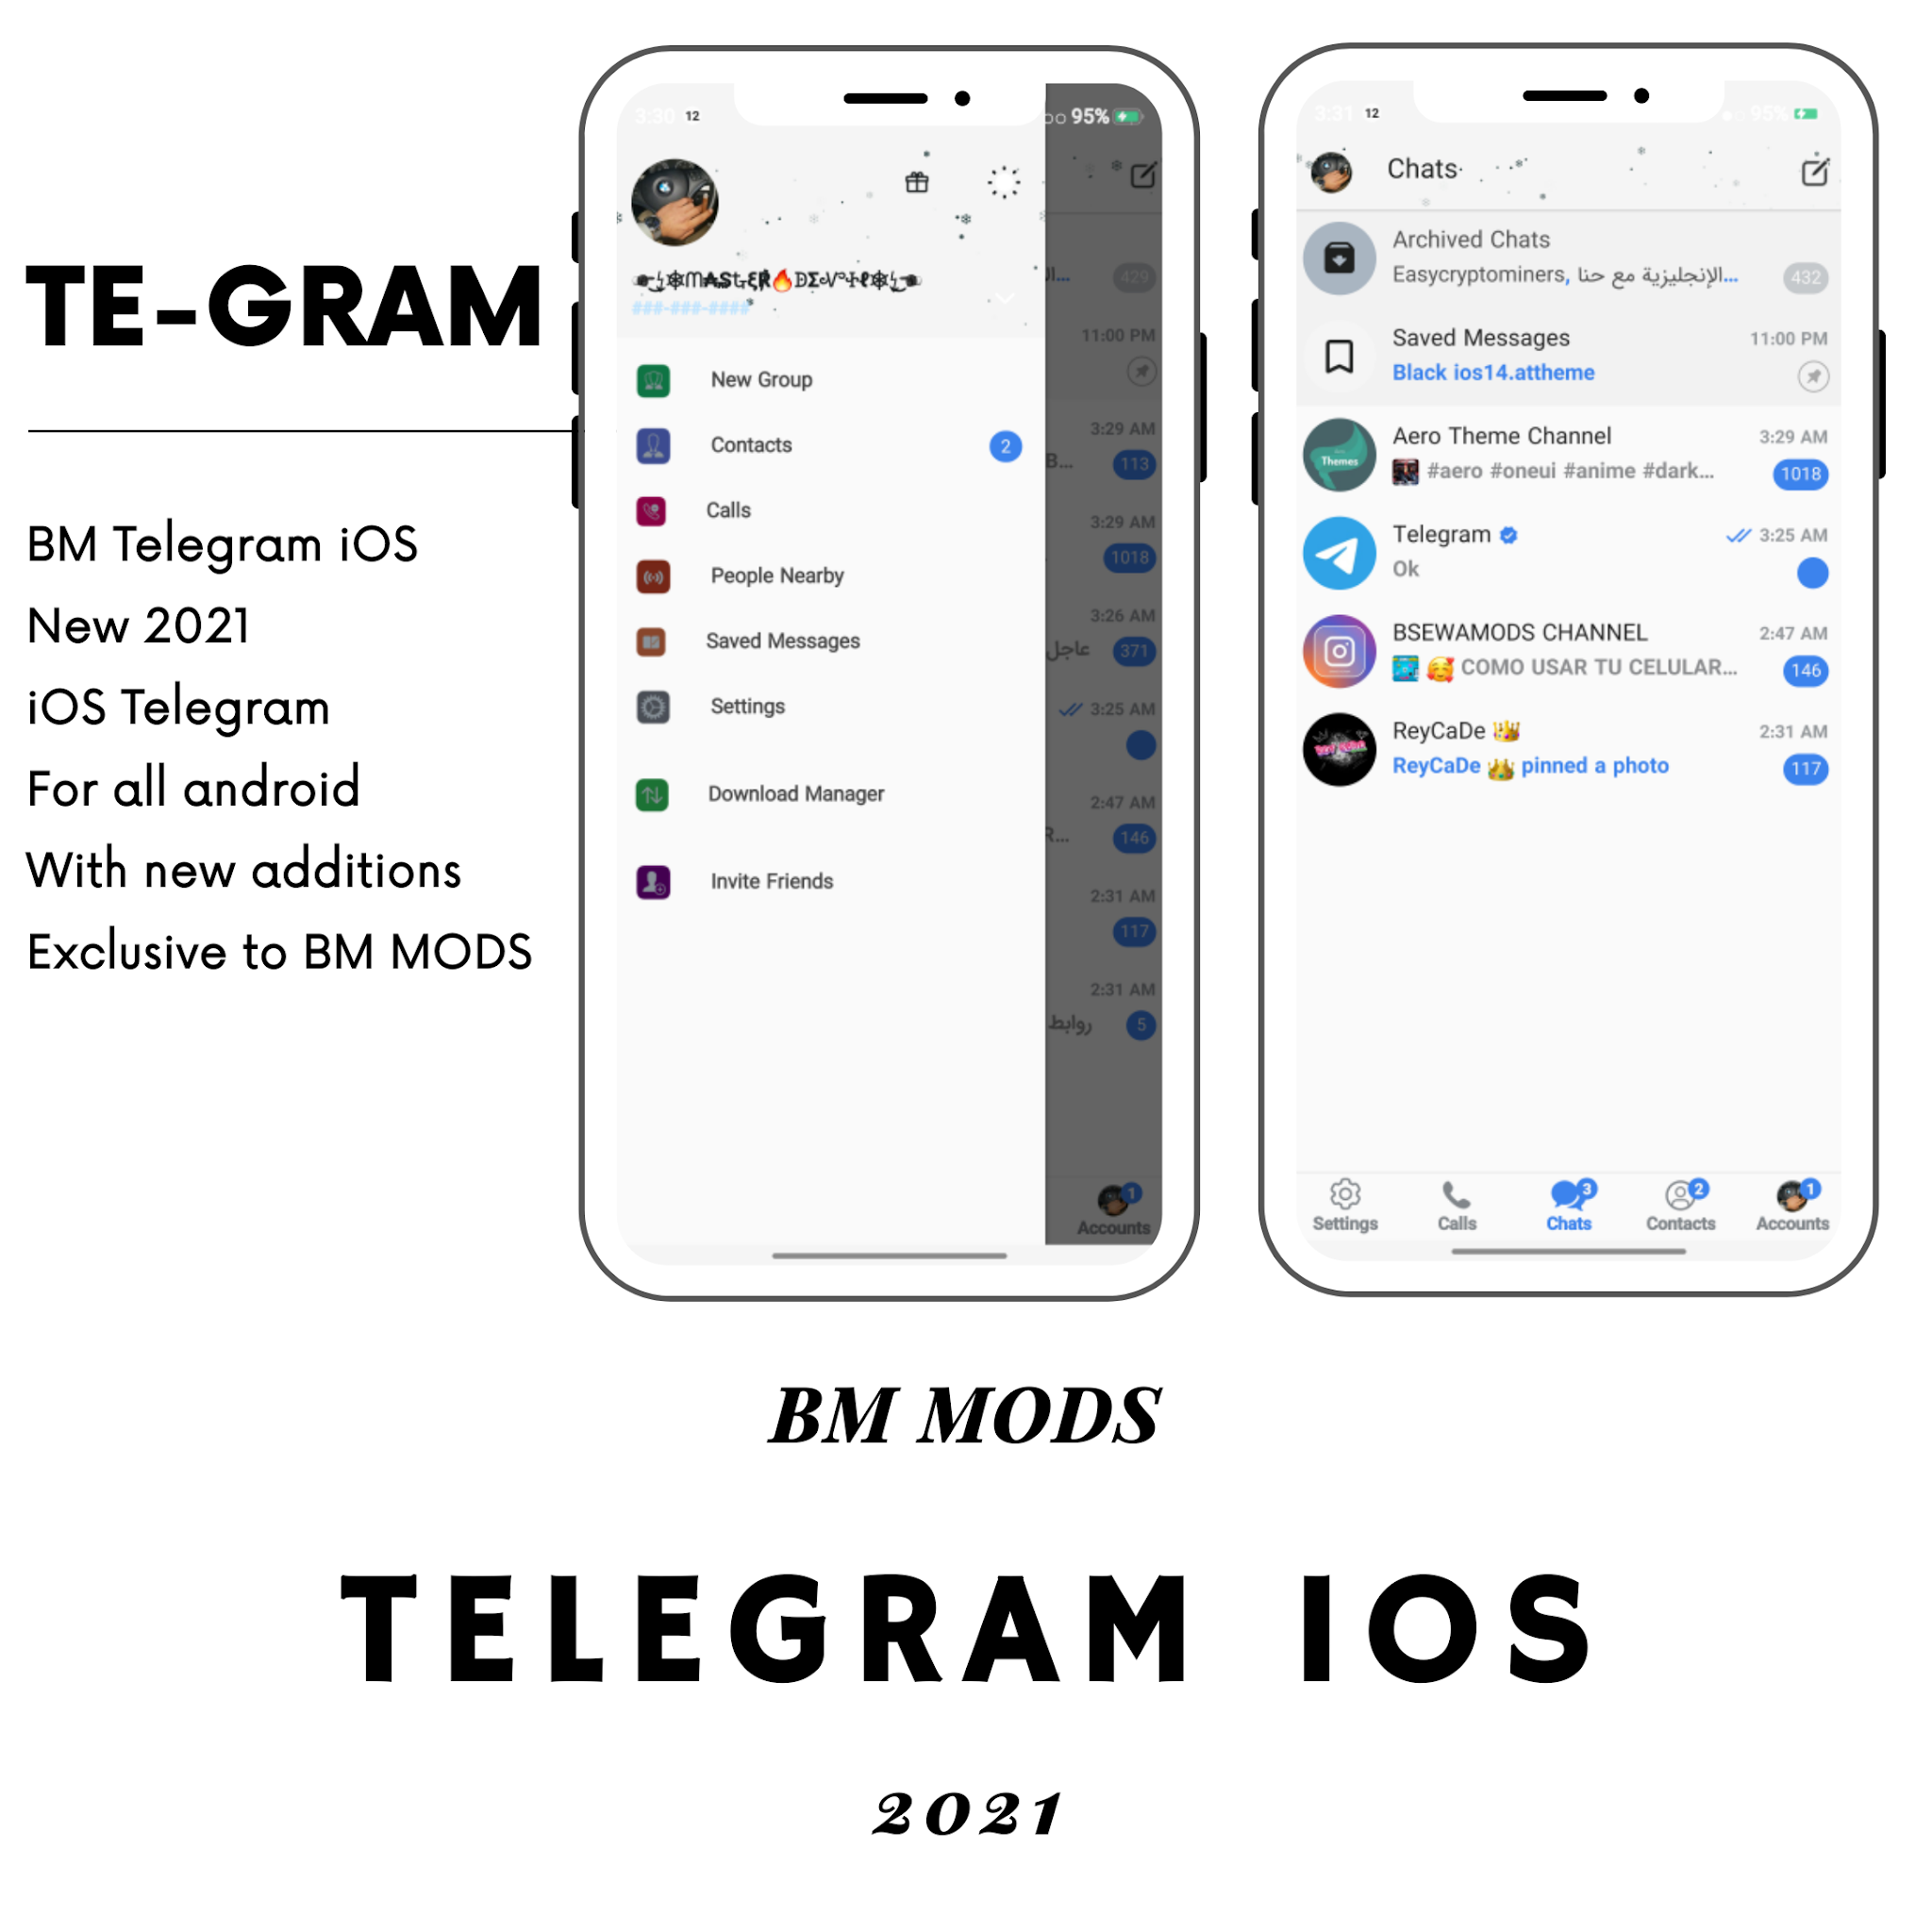 TELEGRAM iOS